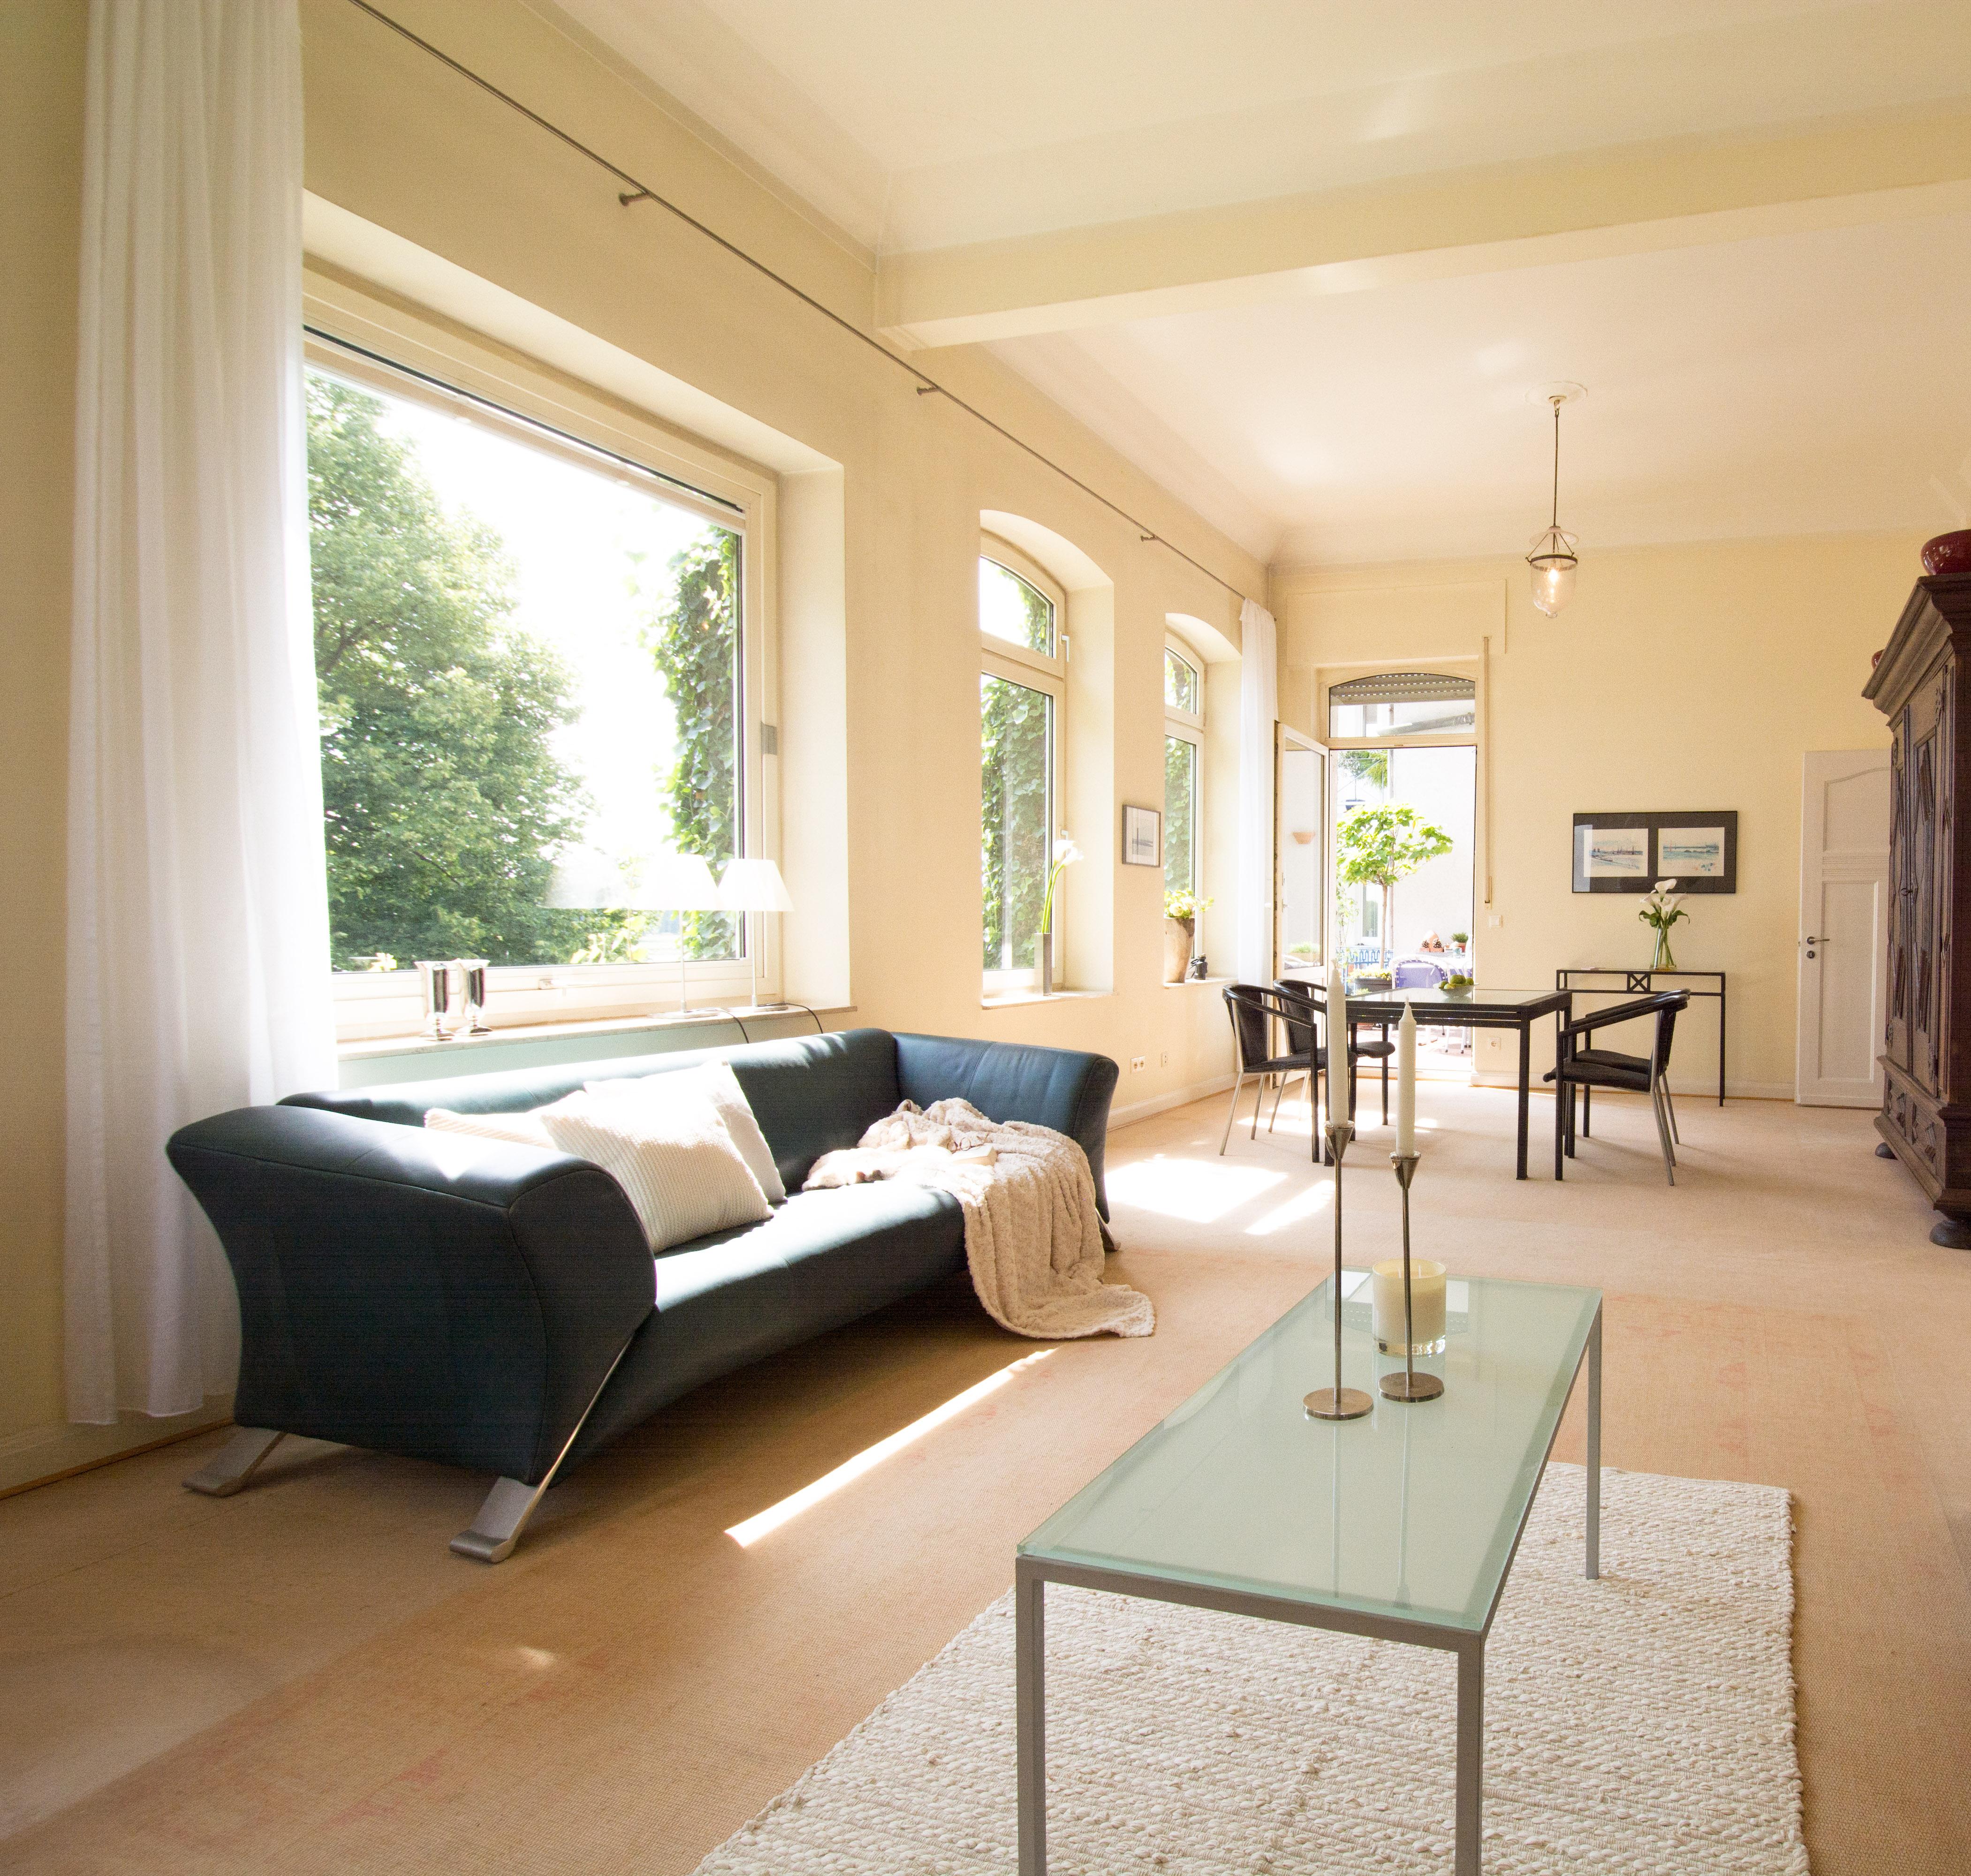 Wohnzimmer #couchtisch #glastisch #sofakissen #sofa #blauessofa #glascouchtisch #großesfenster ©Luna Home Staging